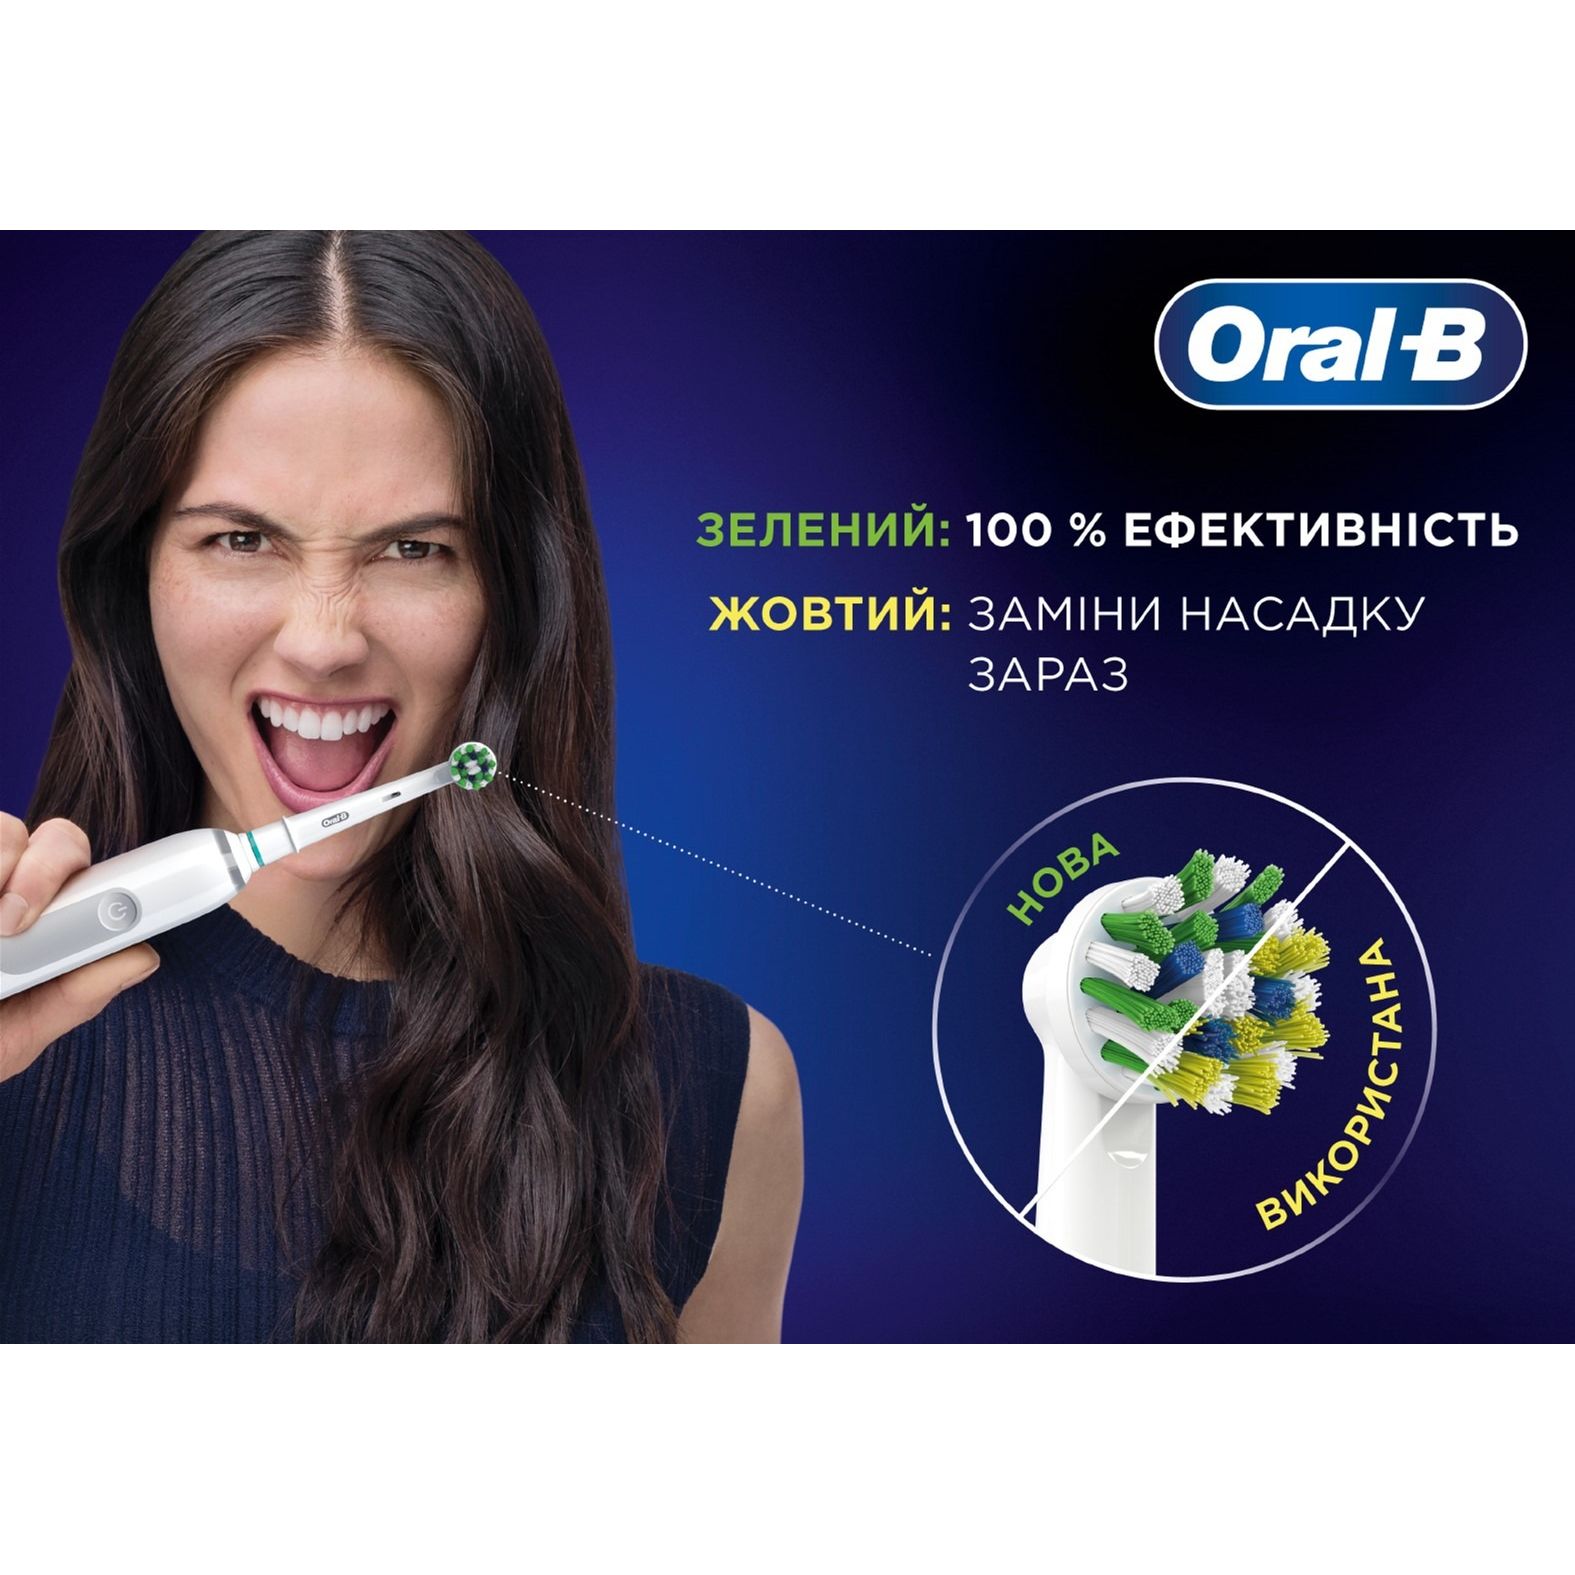 Змінні насадки до електричної зубної щітки Oral-B Pro Cross Action EB50RX 2 шт. - фото 4